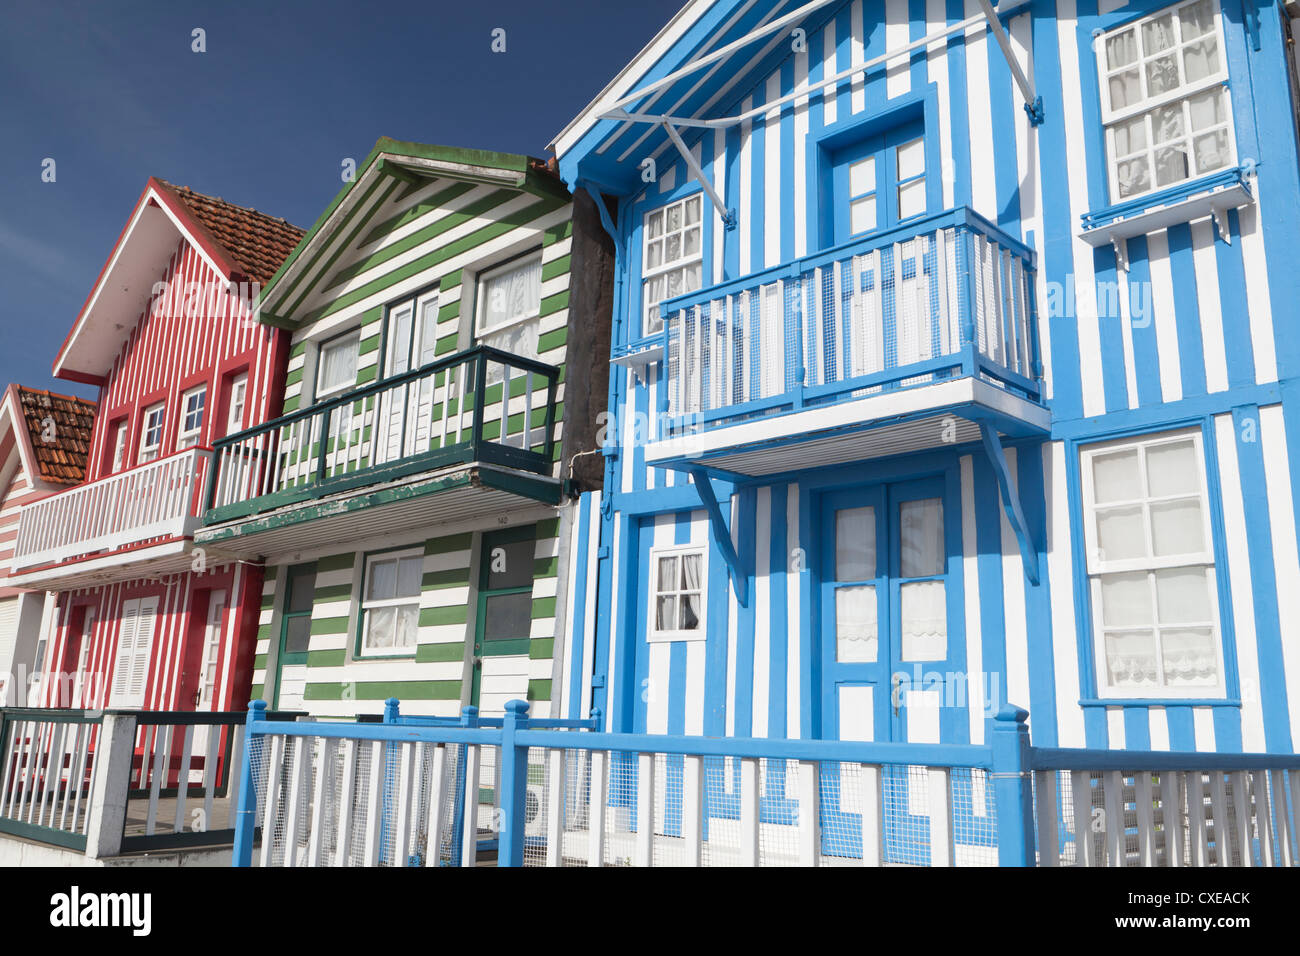 Traditional colourful beach houses in Costa Nova, Costa de Prata, Beira  Litoral, Aveiro, Portugal Stock Photo - Alamy